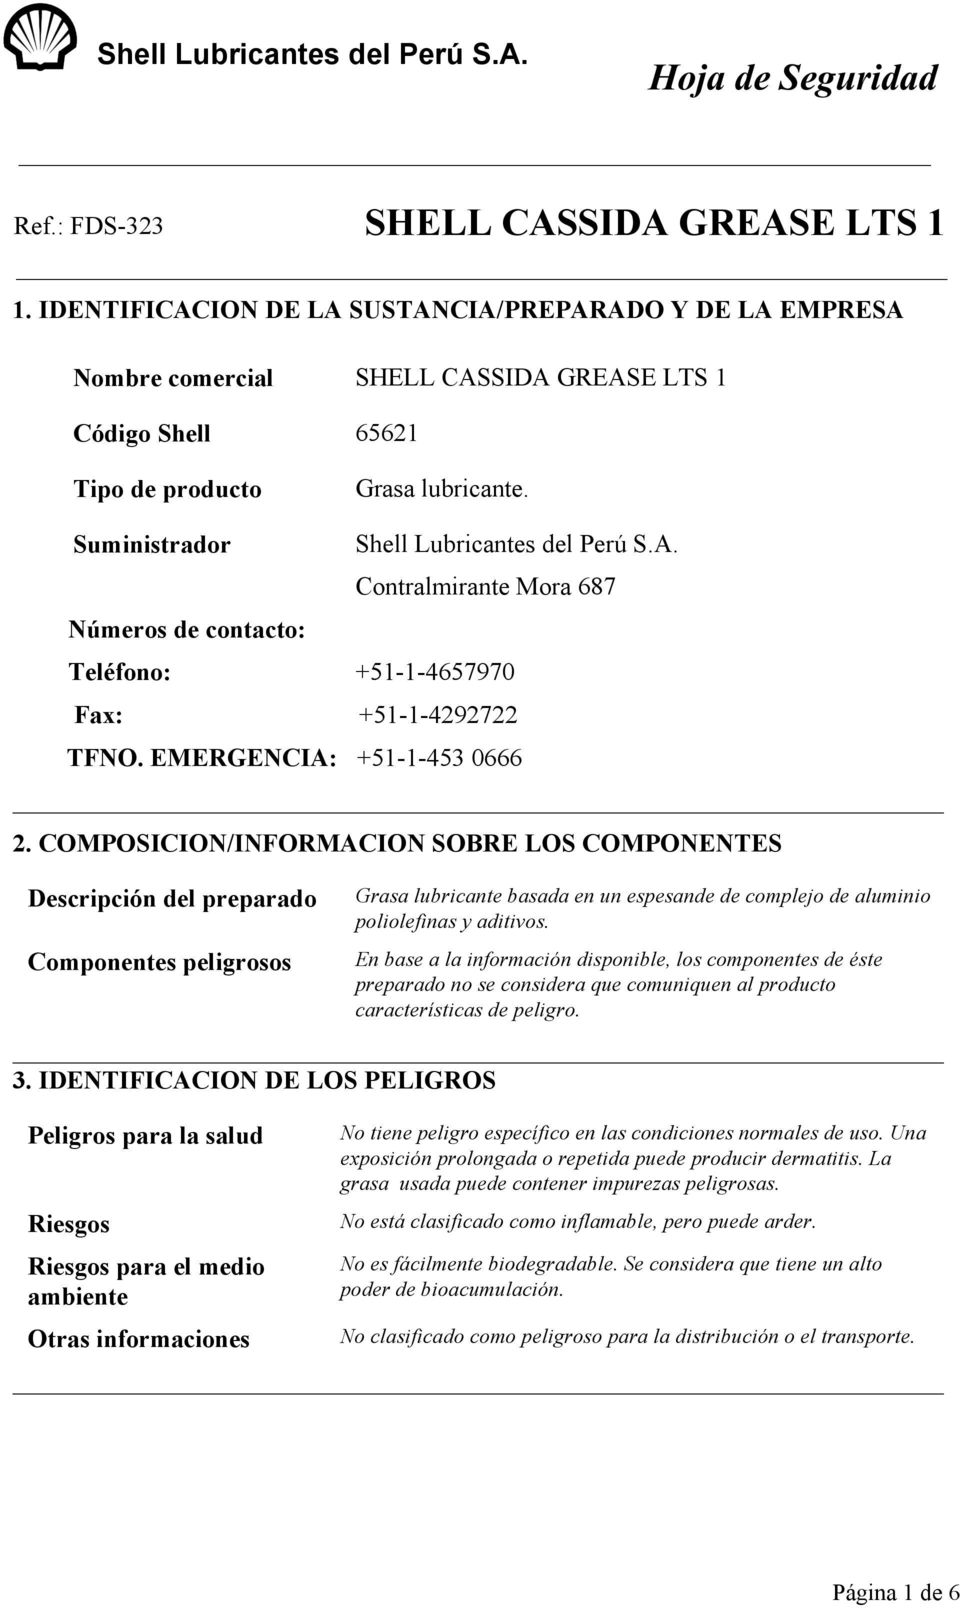 EMERGENCIA: +51-1-453 0666 2. COMPOSICION/INFORMACION SOBRE LOS COMPONENTES Descripción del preparado Grasa lubricante basada en un espesande de complejo de aluminio poliolefinas y aditivos.